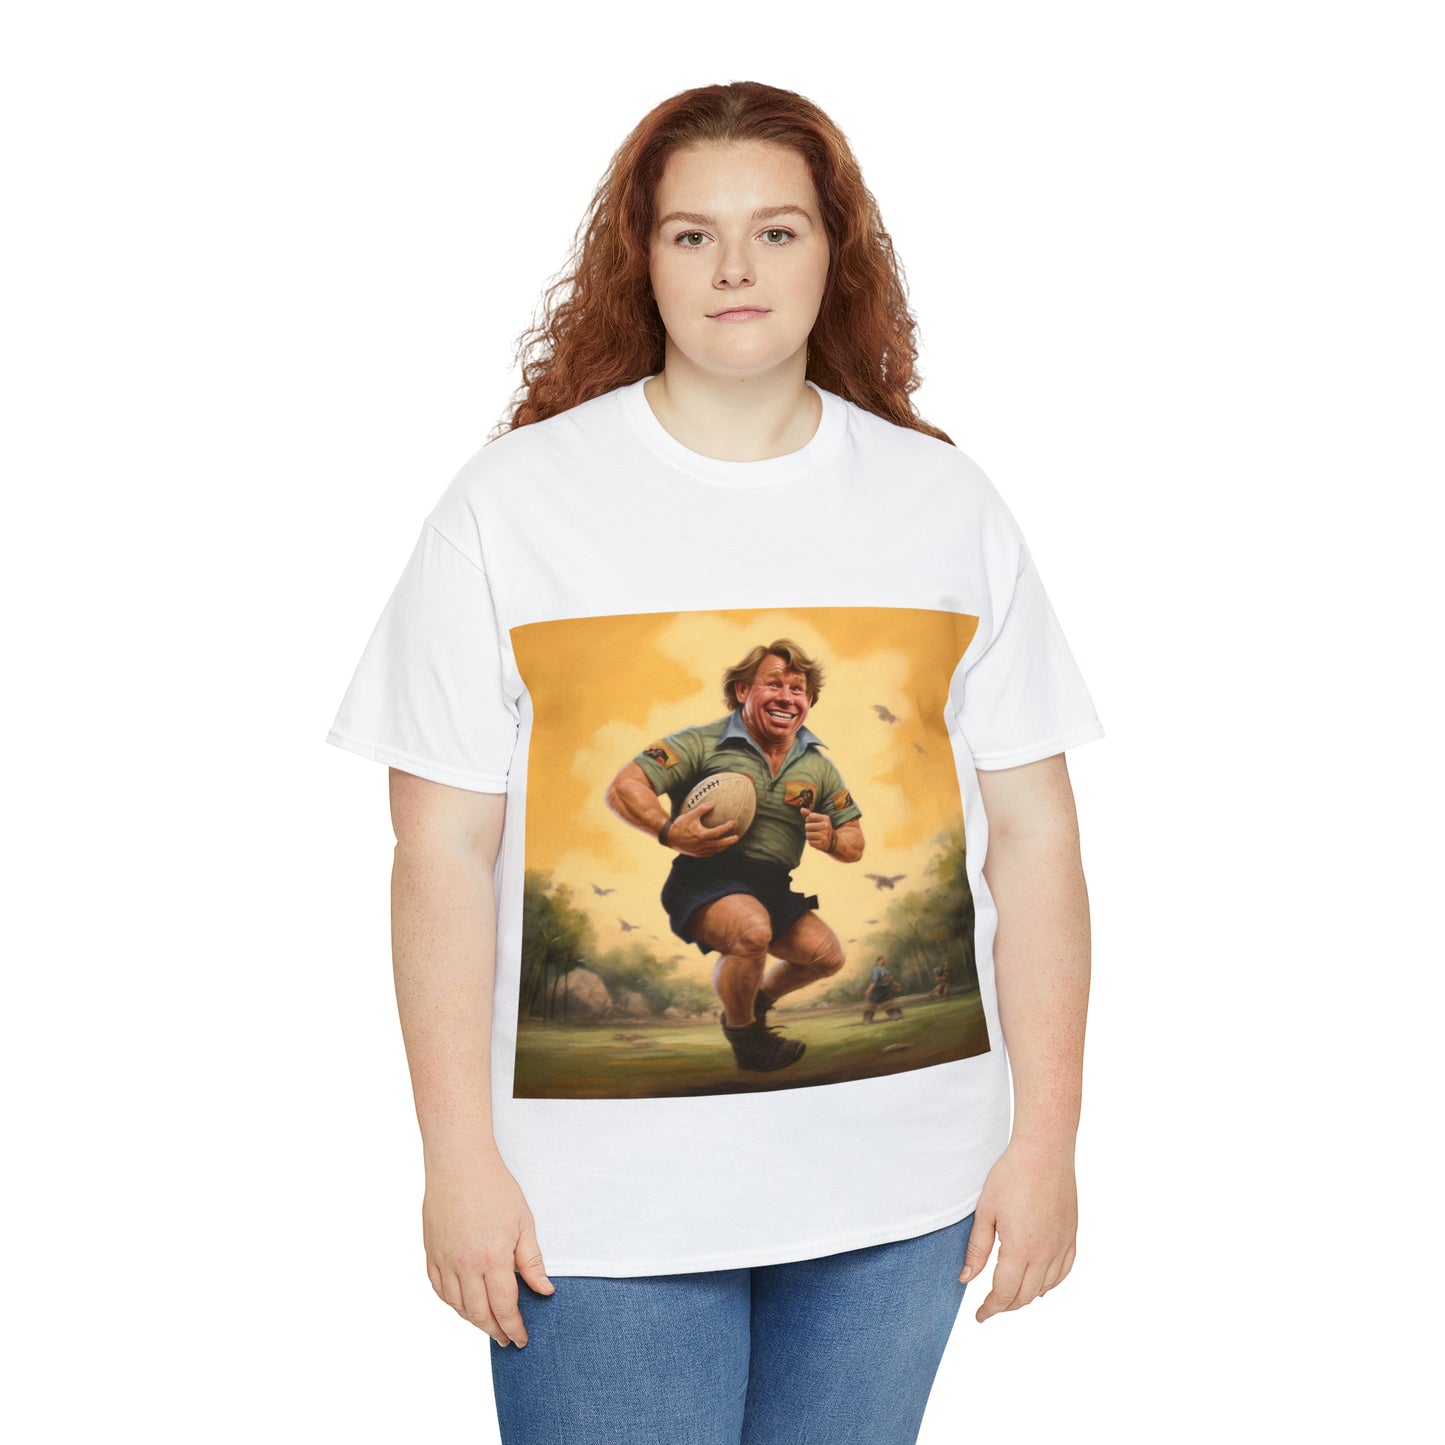 Steve Irwin - light shirt